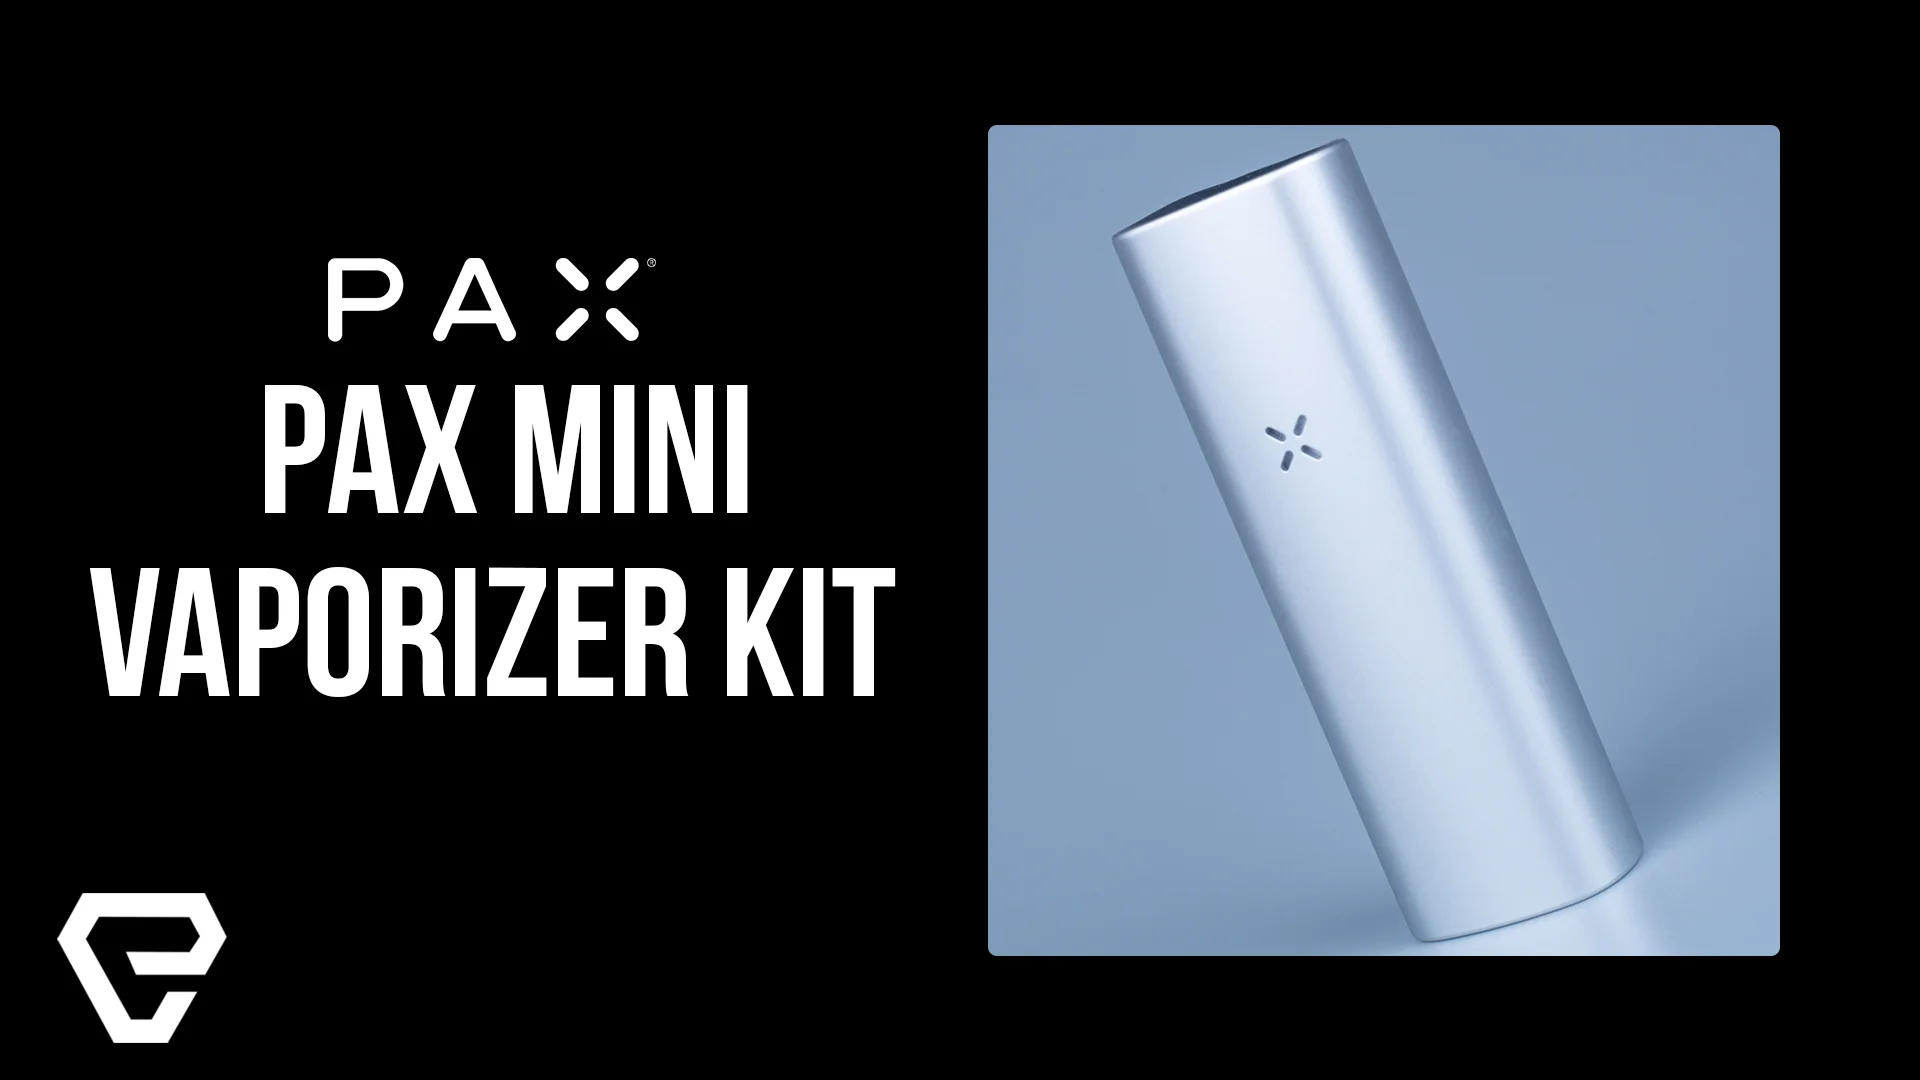 Vape Product Review: Pax Pax PLUS Vaporizer Kit on Vimeo